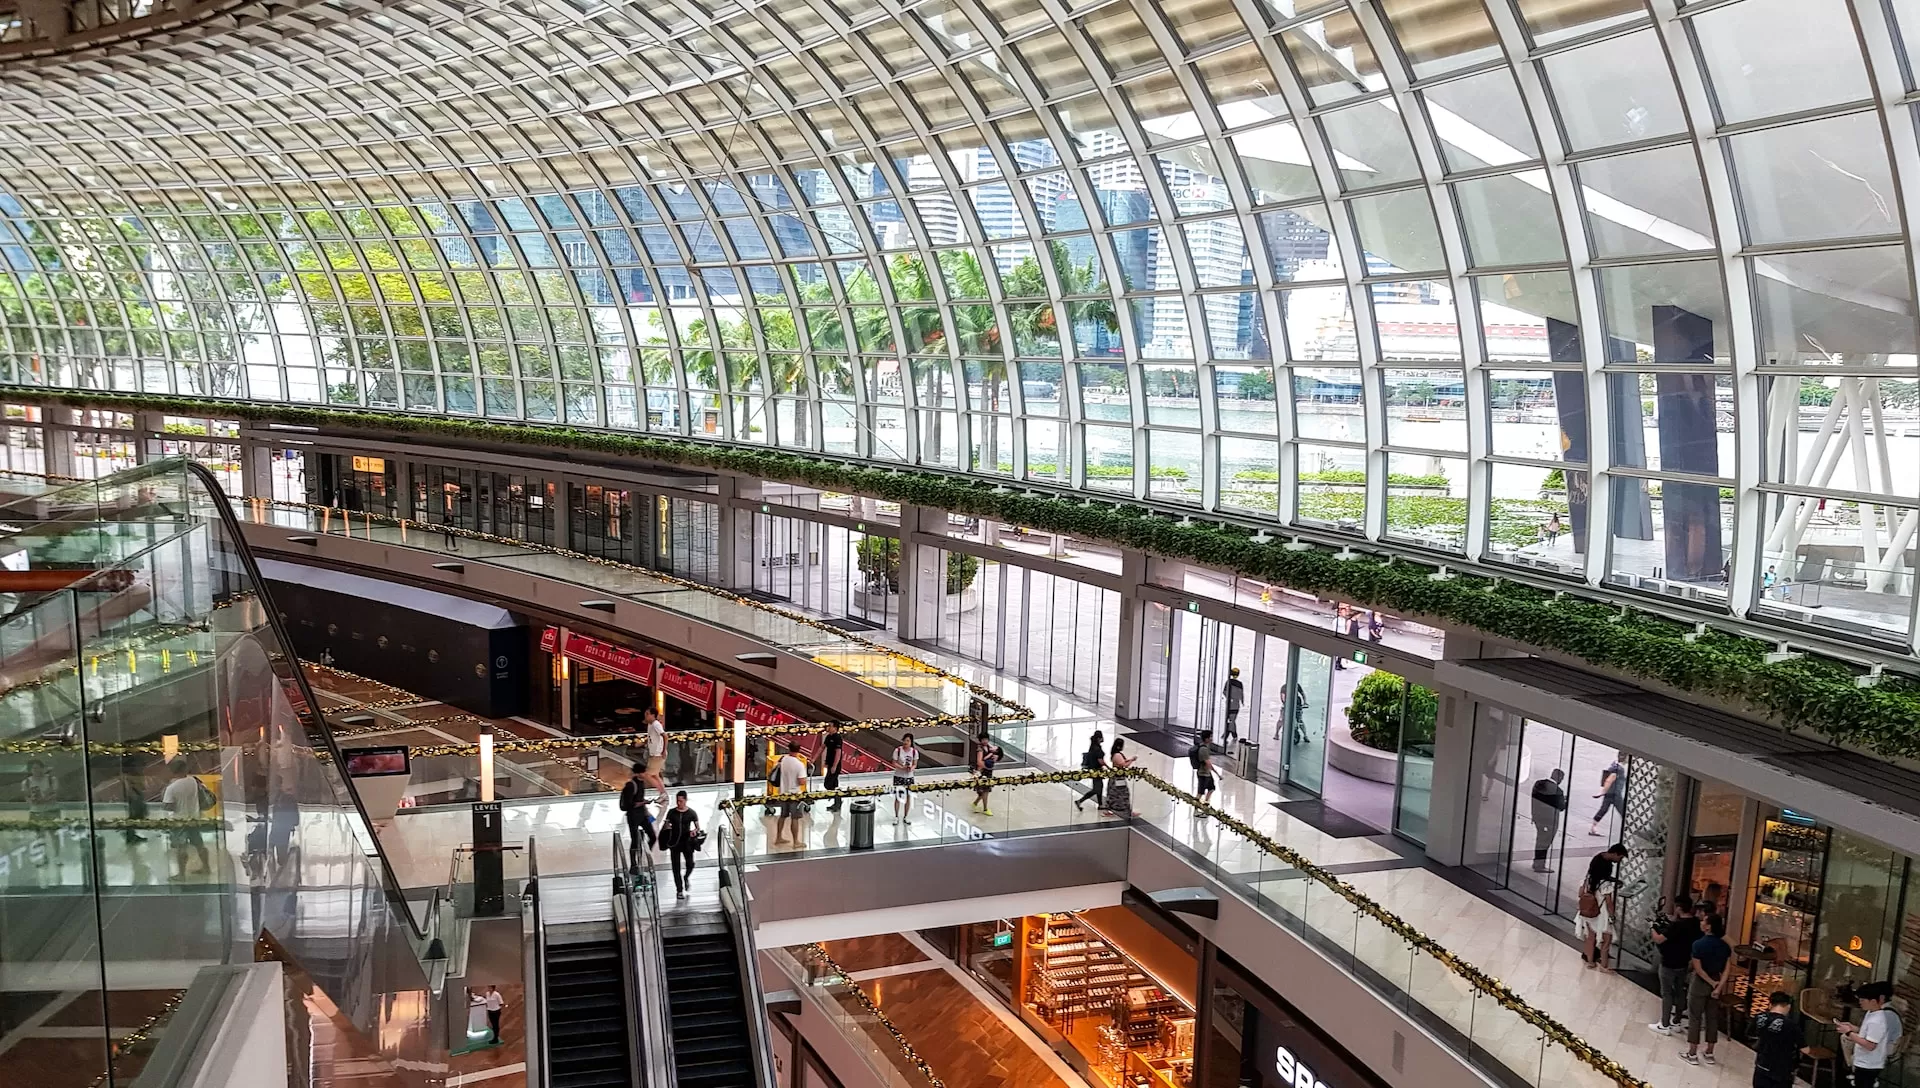 Inilah 3 Mall Termewah di Kota Mataram: Sampai Kaki Pegal Auto Tetap Semangat Belanja di Tempat Super Megah dan Hits